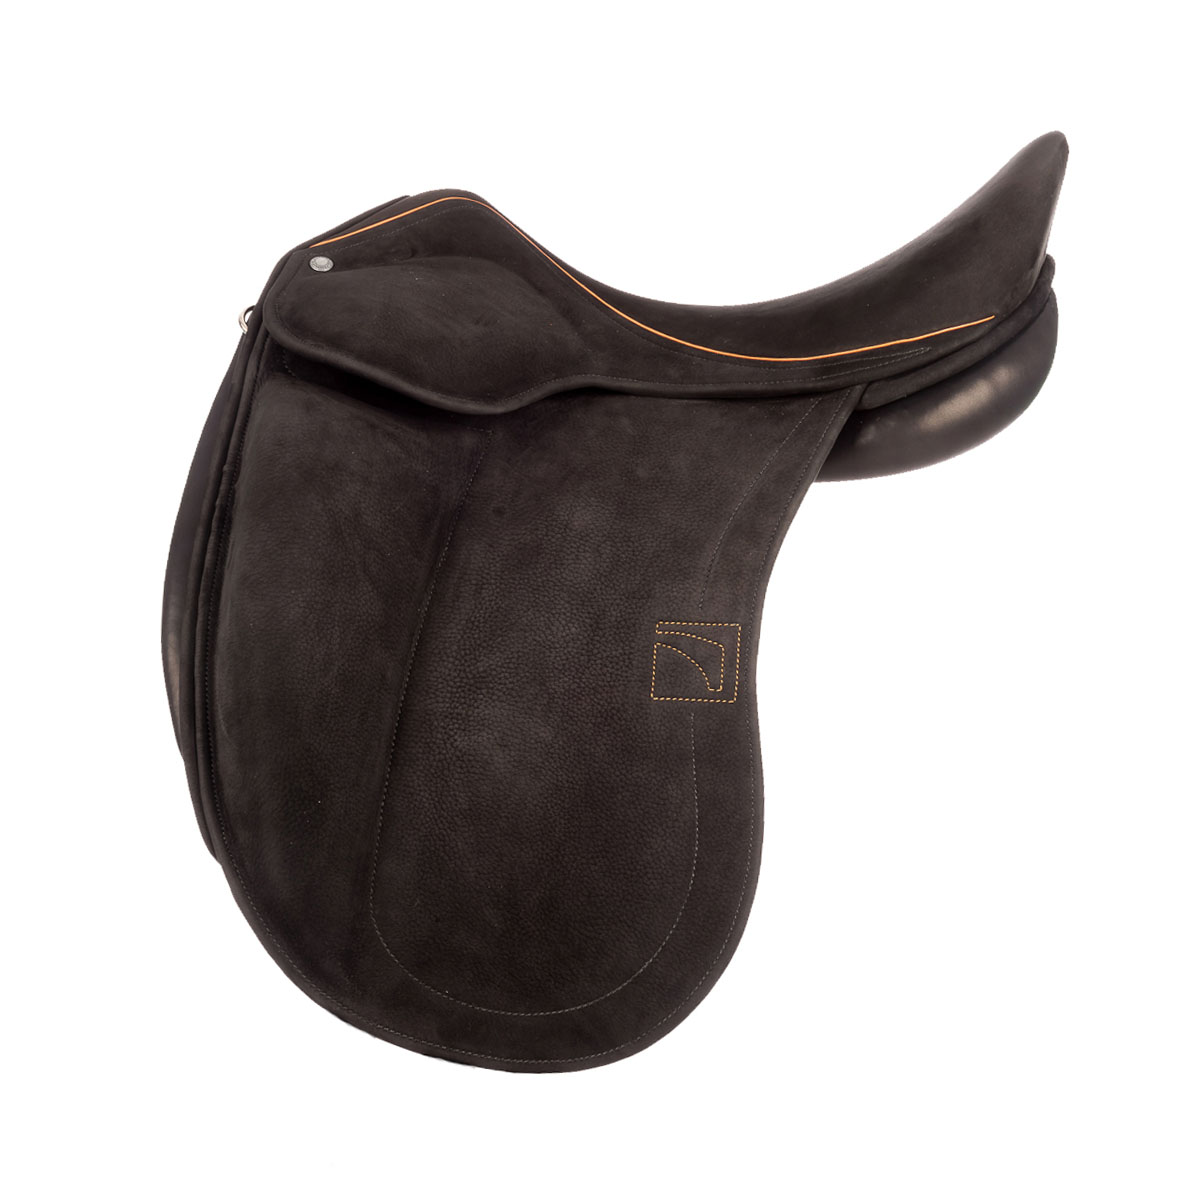 Modèle DAC dressage selle sur-mesure Childéric cuir bespoke saddle fait en France made in France fait main